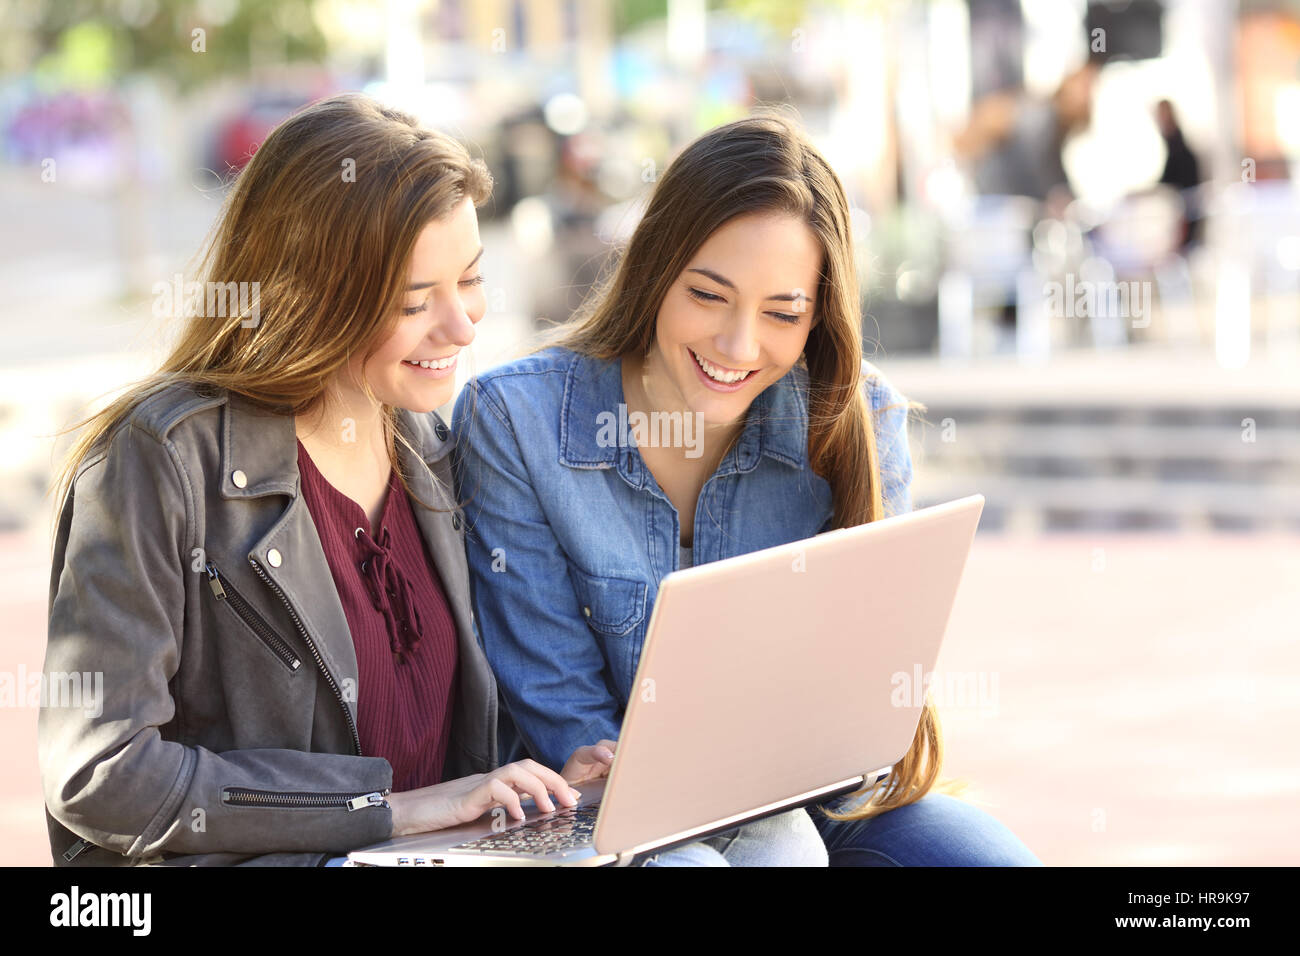 Deux amis de regarder du contenu multimédia en ligne avec un ordinateur portable assis sur un banc dans la rue avec un milieu urbain Banque D'Images